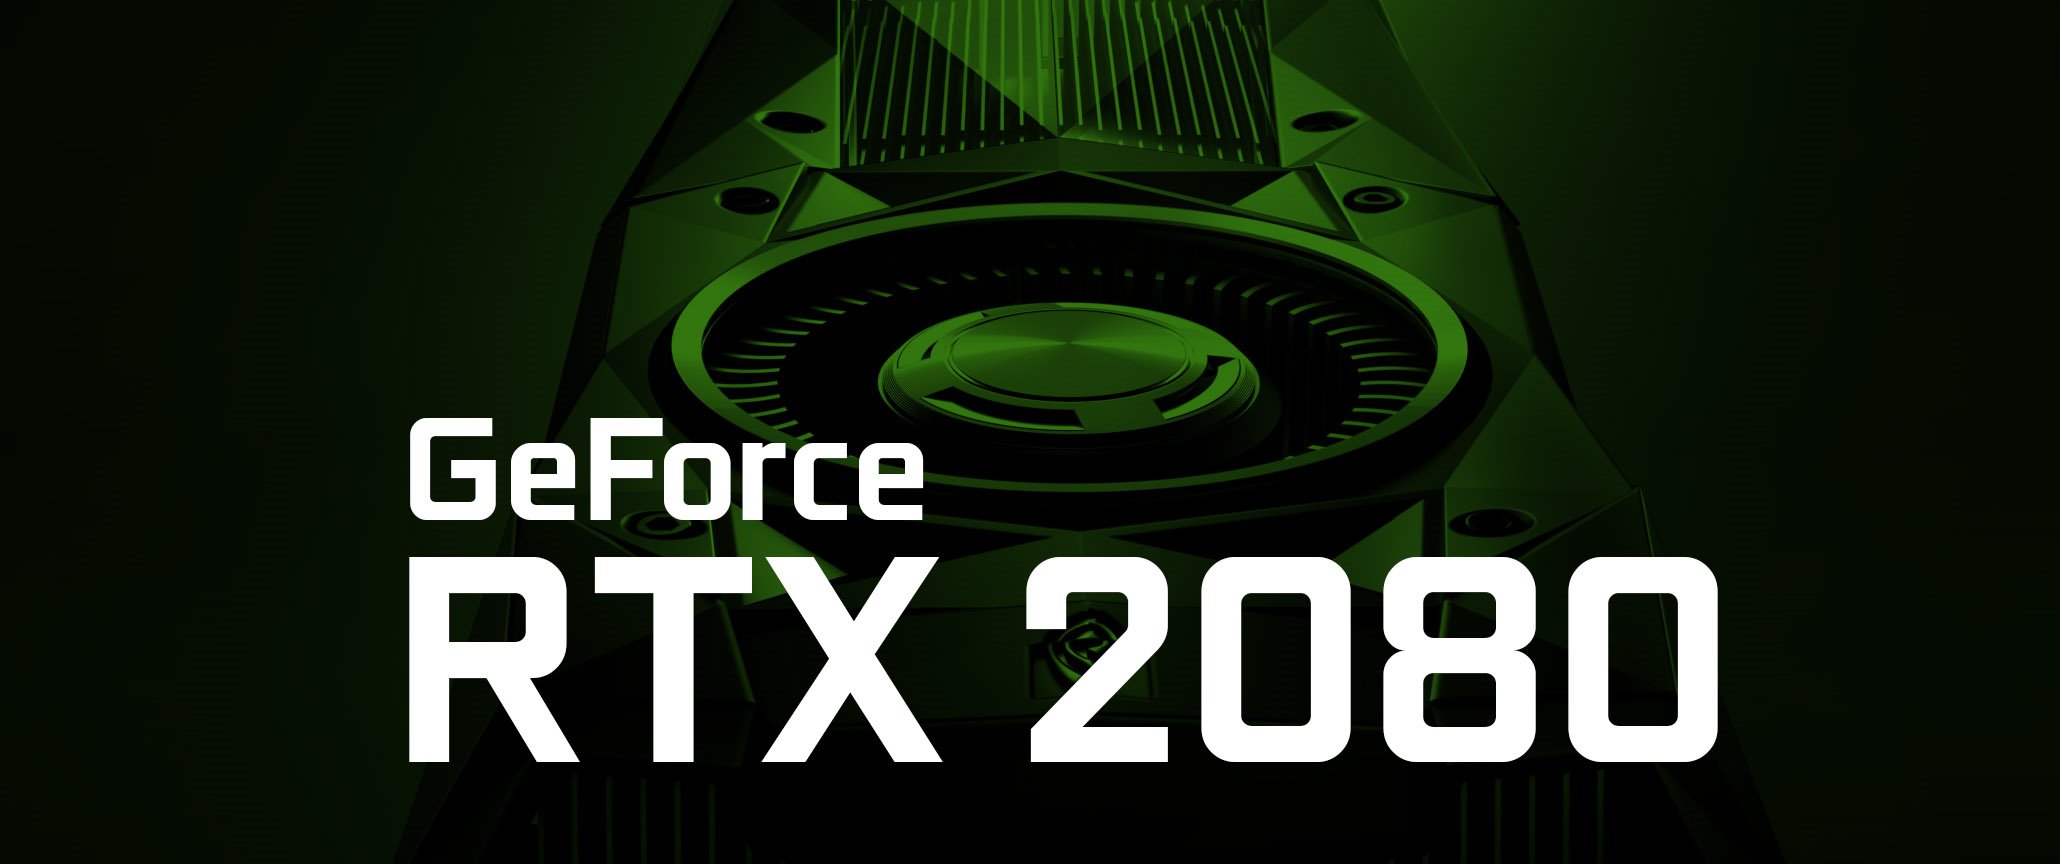 [Finalizado] Apresentando a Nvidia GeForce RTX 2080 Ti, RTX 2080 e RTX 2070